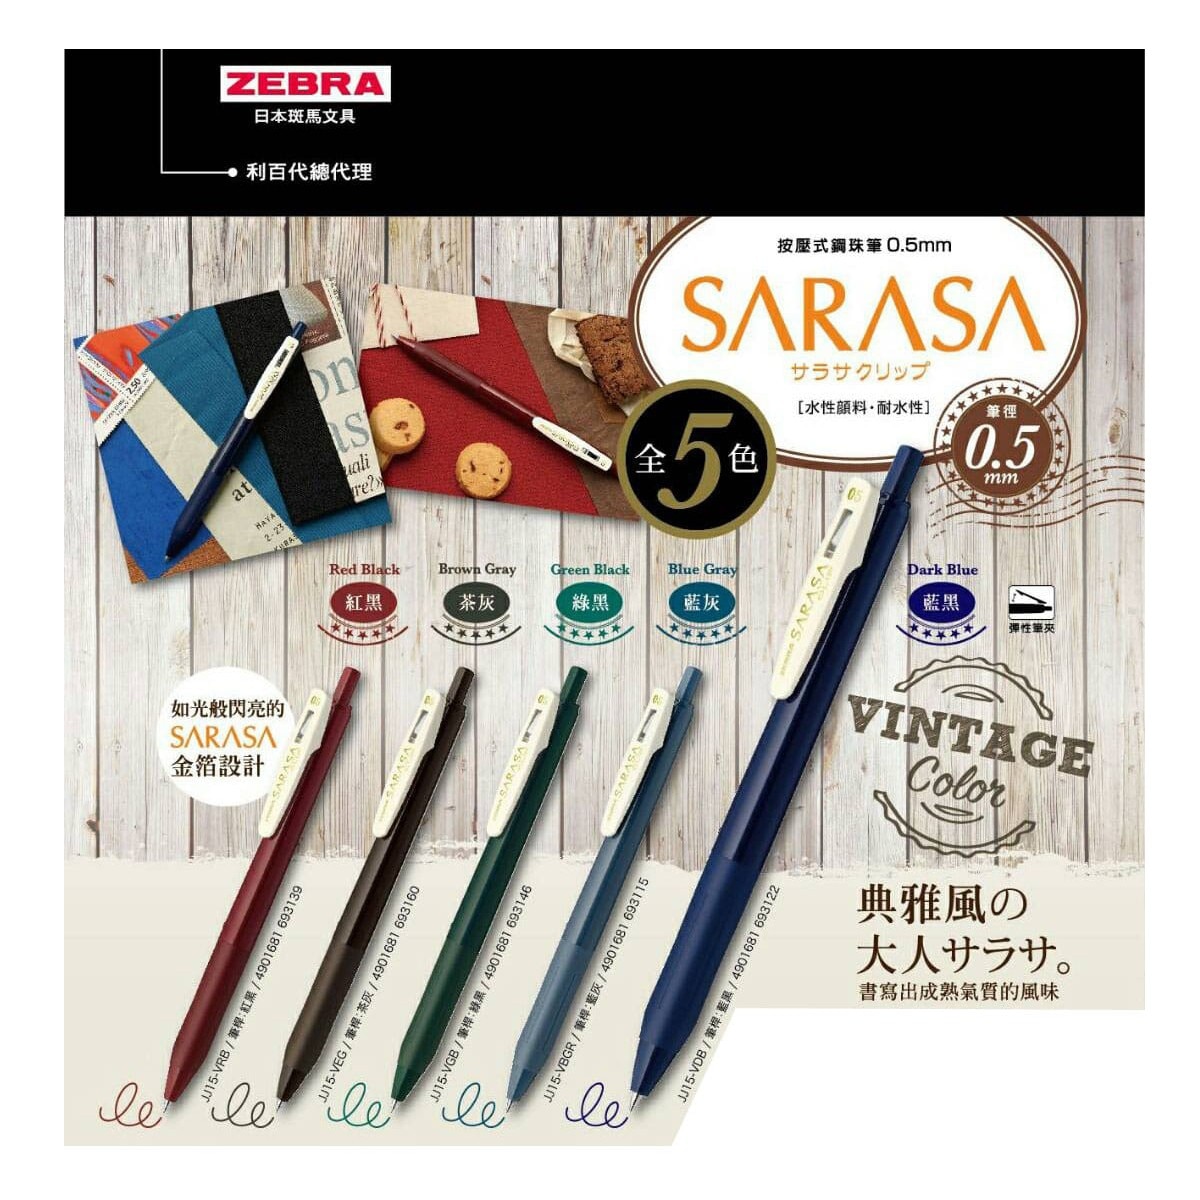 日本斑馬文具 ZEBRA SARASA CLIP 系列按壓式典雅風鋼珠筆0.5mm 5色組 4入，顏料系墨水、耐光耐水，環保商品橡膠握把，多功能筆夾，書寫出成熟氣質的風味。